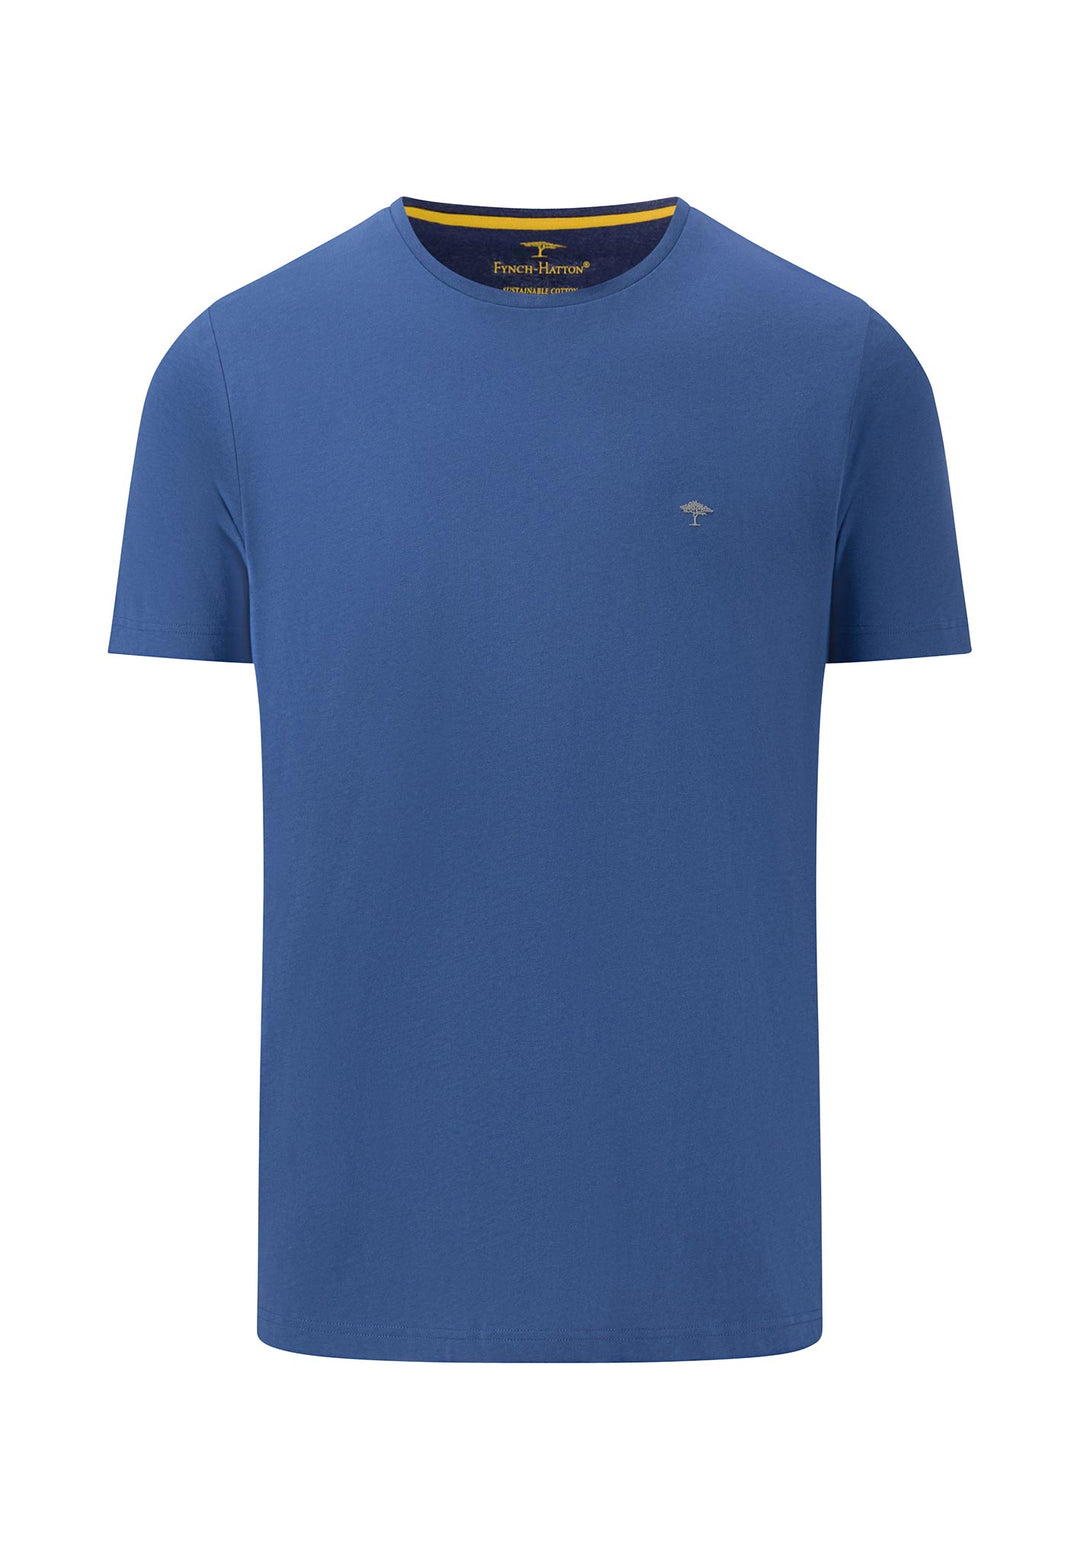 Online crew FYNCH-HATTON Basic – Shop Offizieller neck t-shirt |